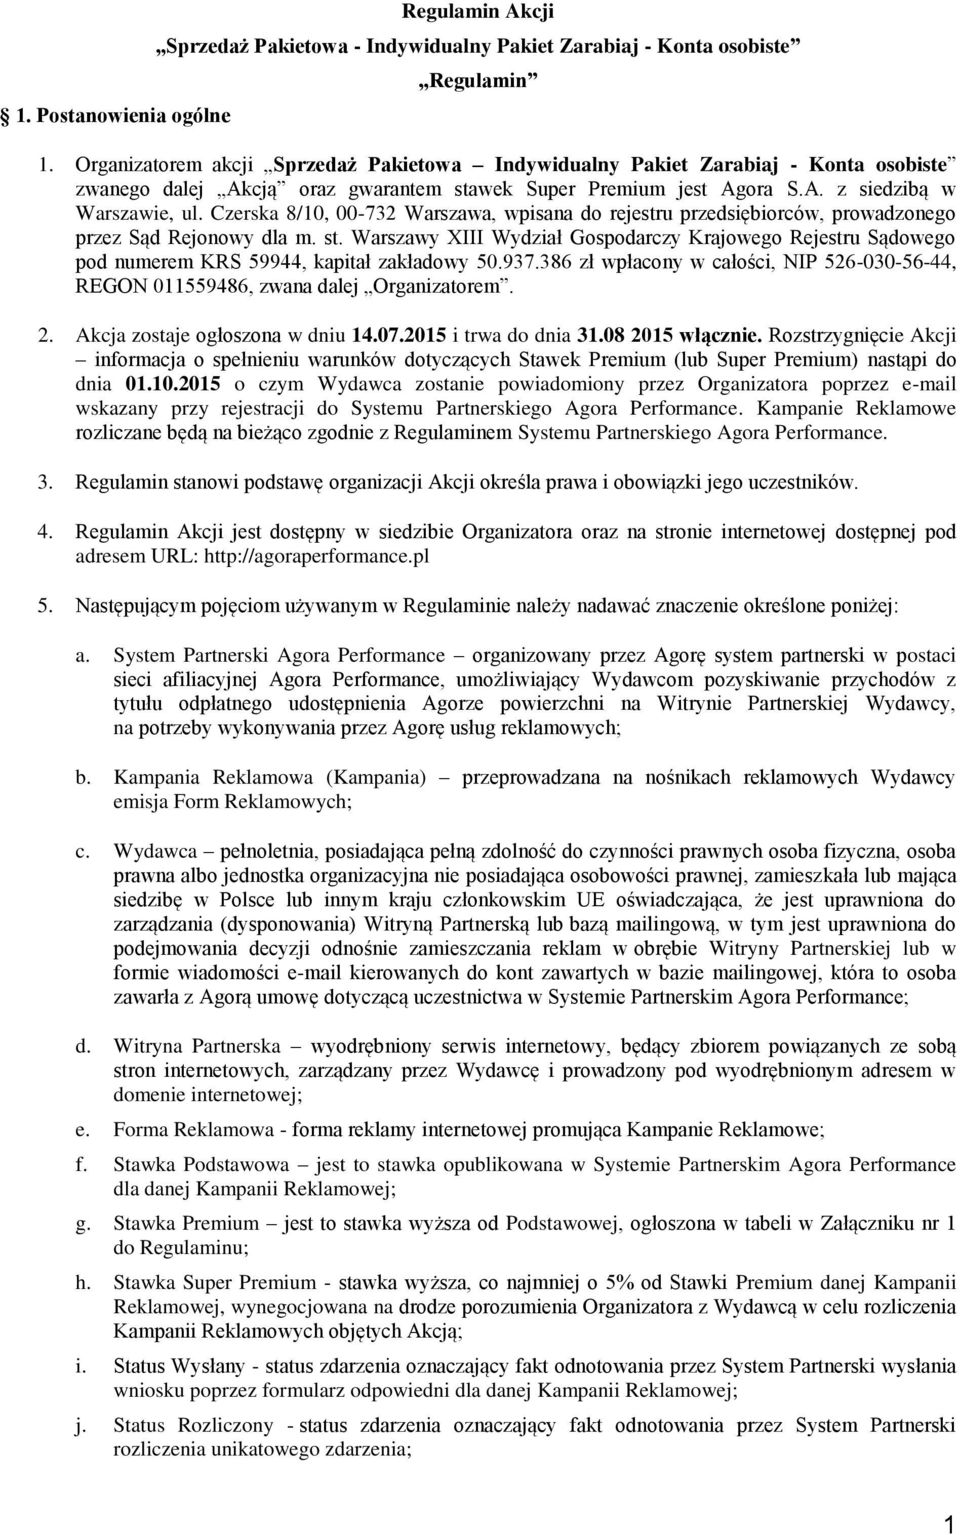 Czerska 8/10, 00-732 Warszawa, wpisana do rejestru przedsiębiorców, prowadzonego przez Sąd Rejonowy dla m. st.